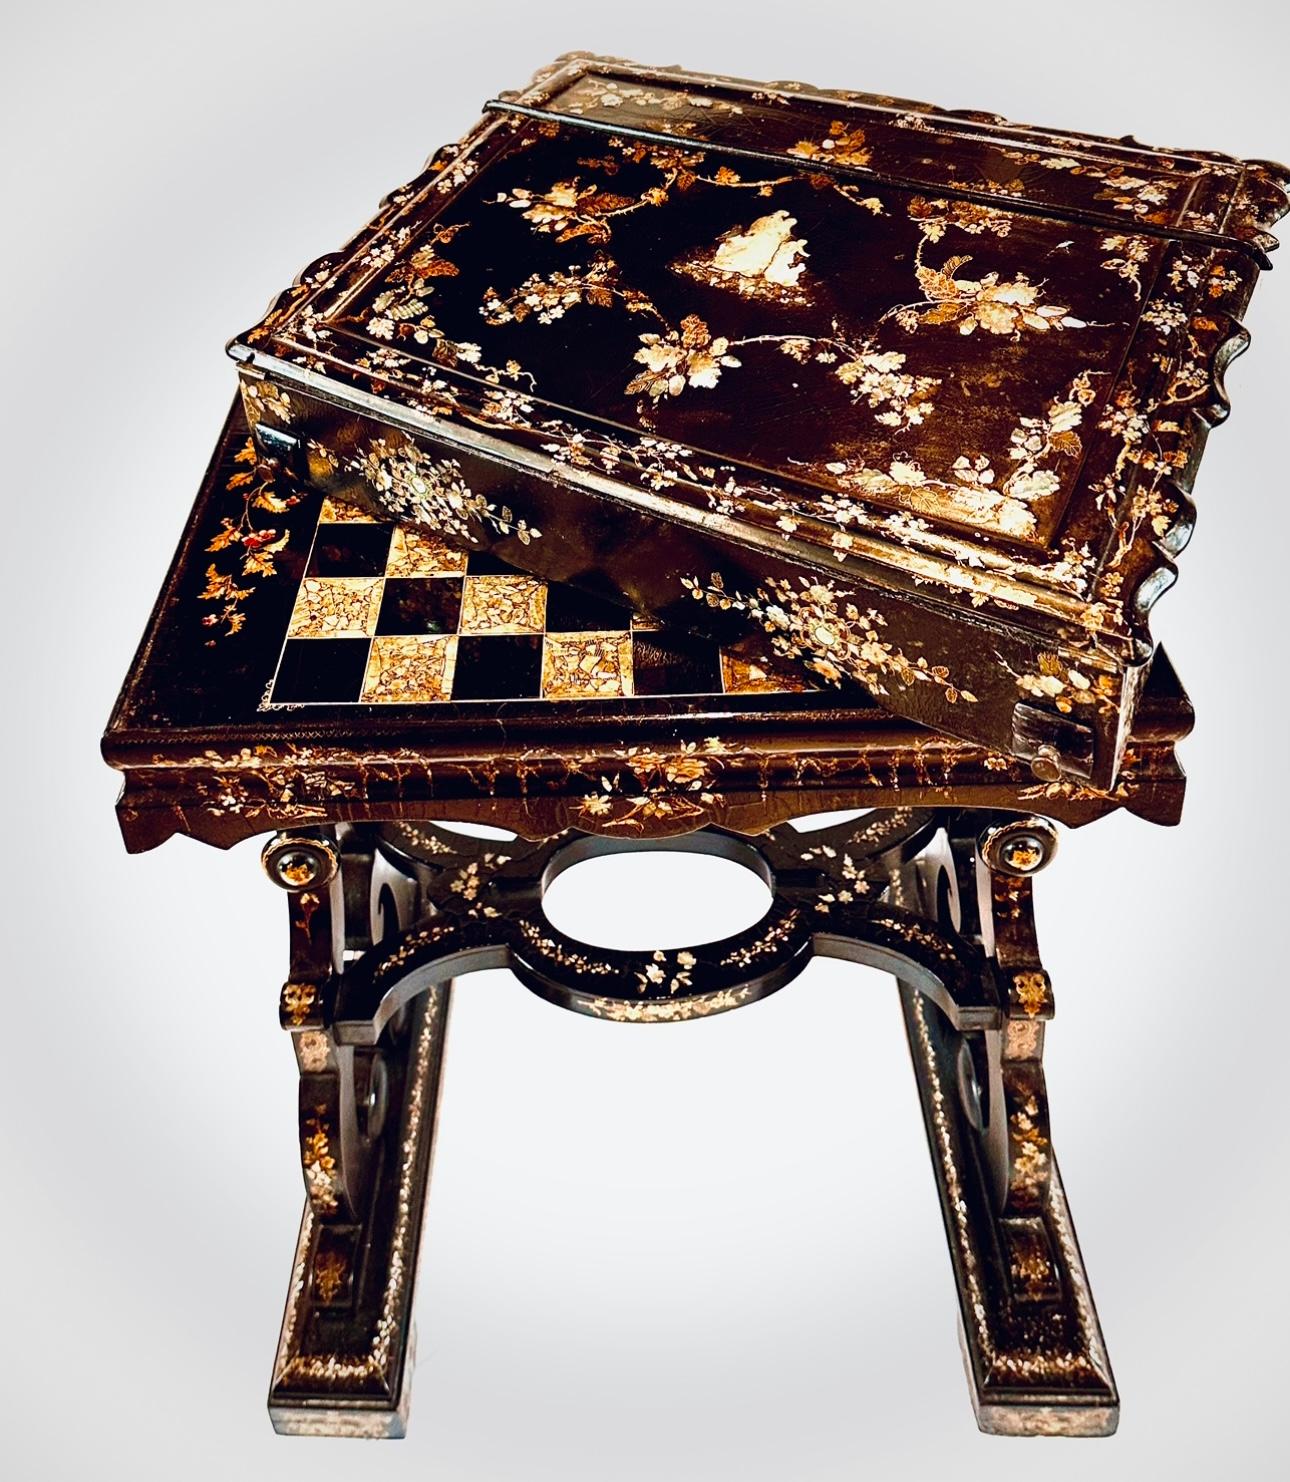 Ebonized 19th Century Papier-mâché Mache Writing Desk and Games Table For Sale